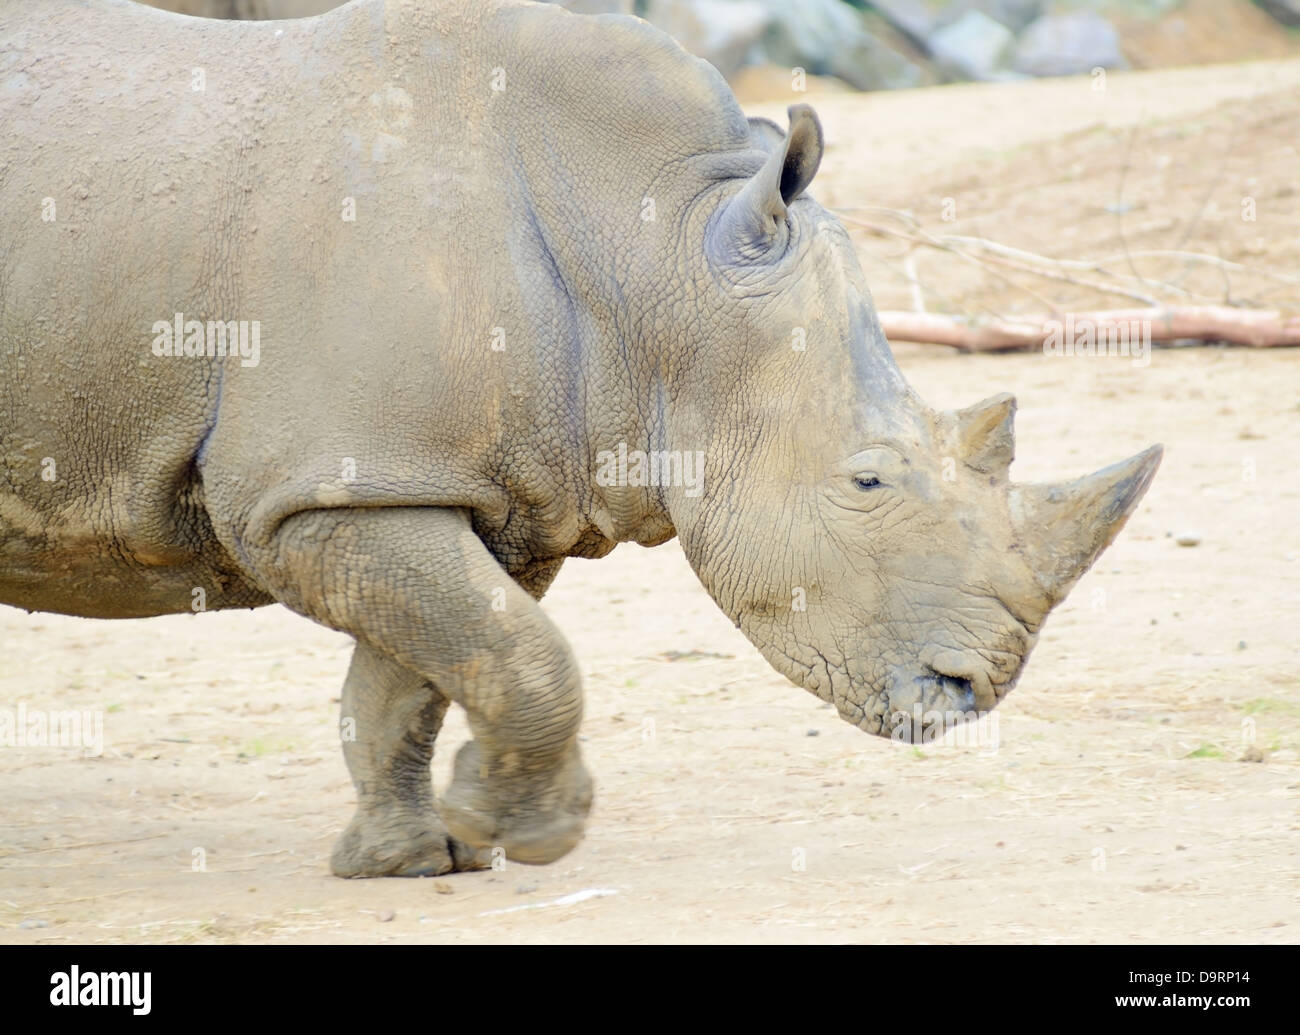 Profil de rhinocéros courir vite ou de charge Banque D'Images